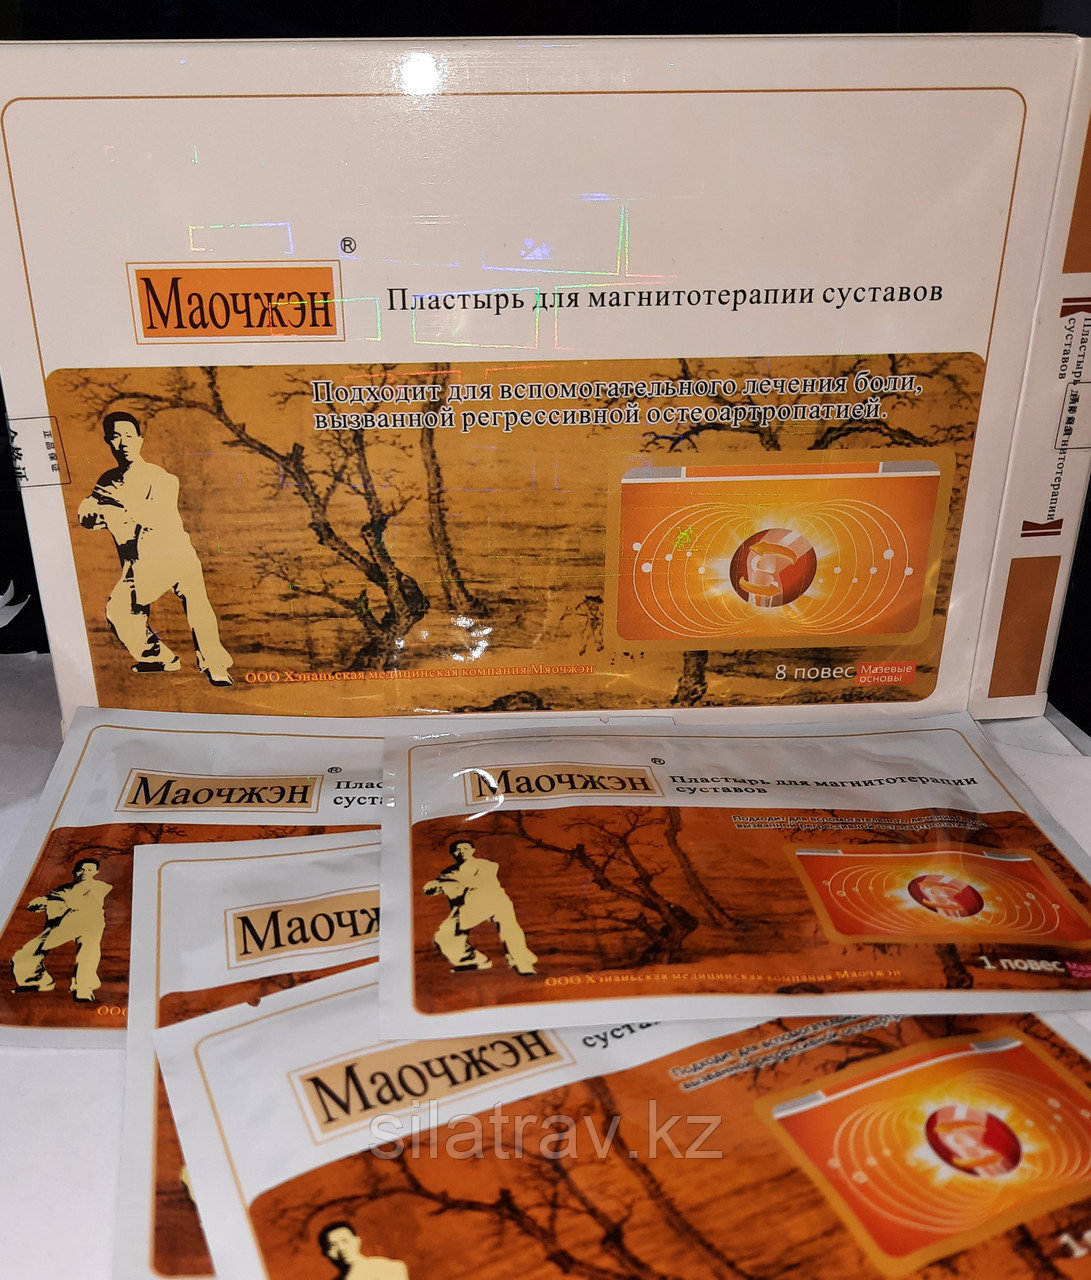 Маочжен - Магнитный пластырь для лечения суставов - 1 упаковка  - 8 пластырей